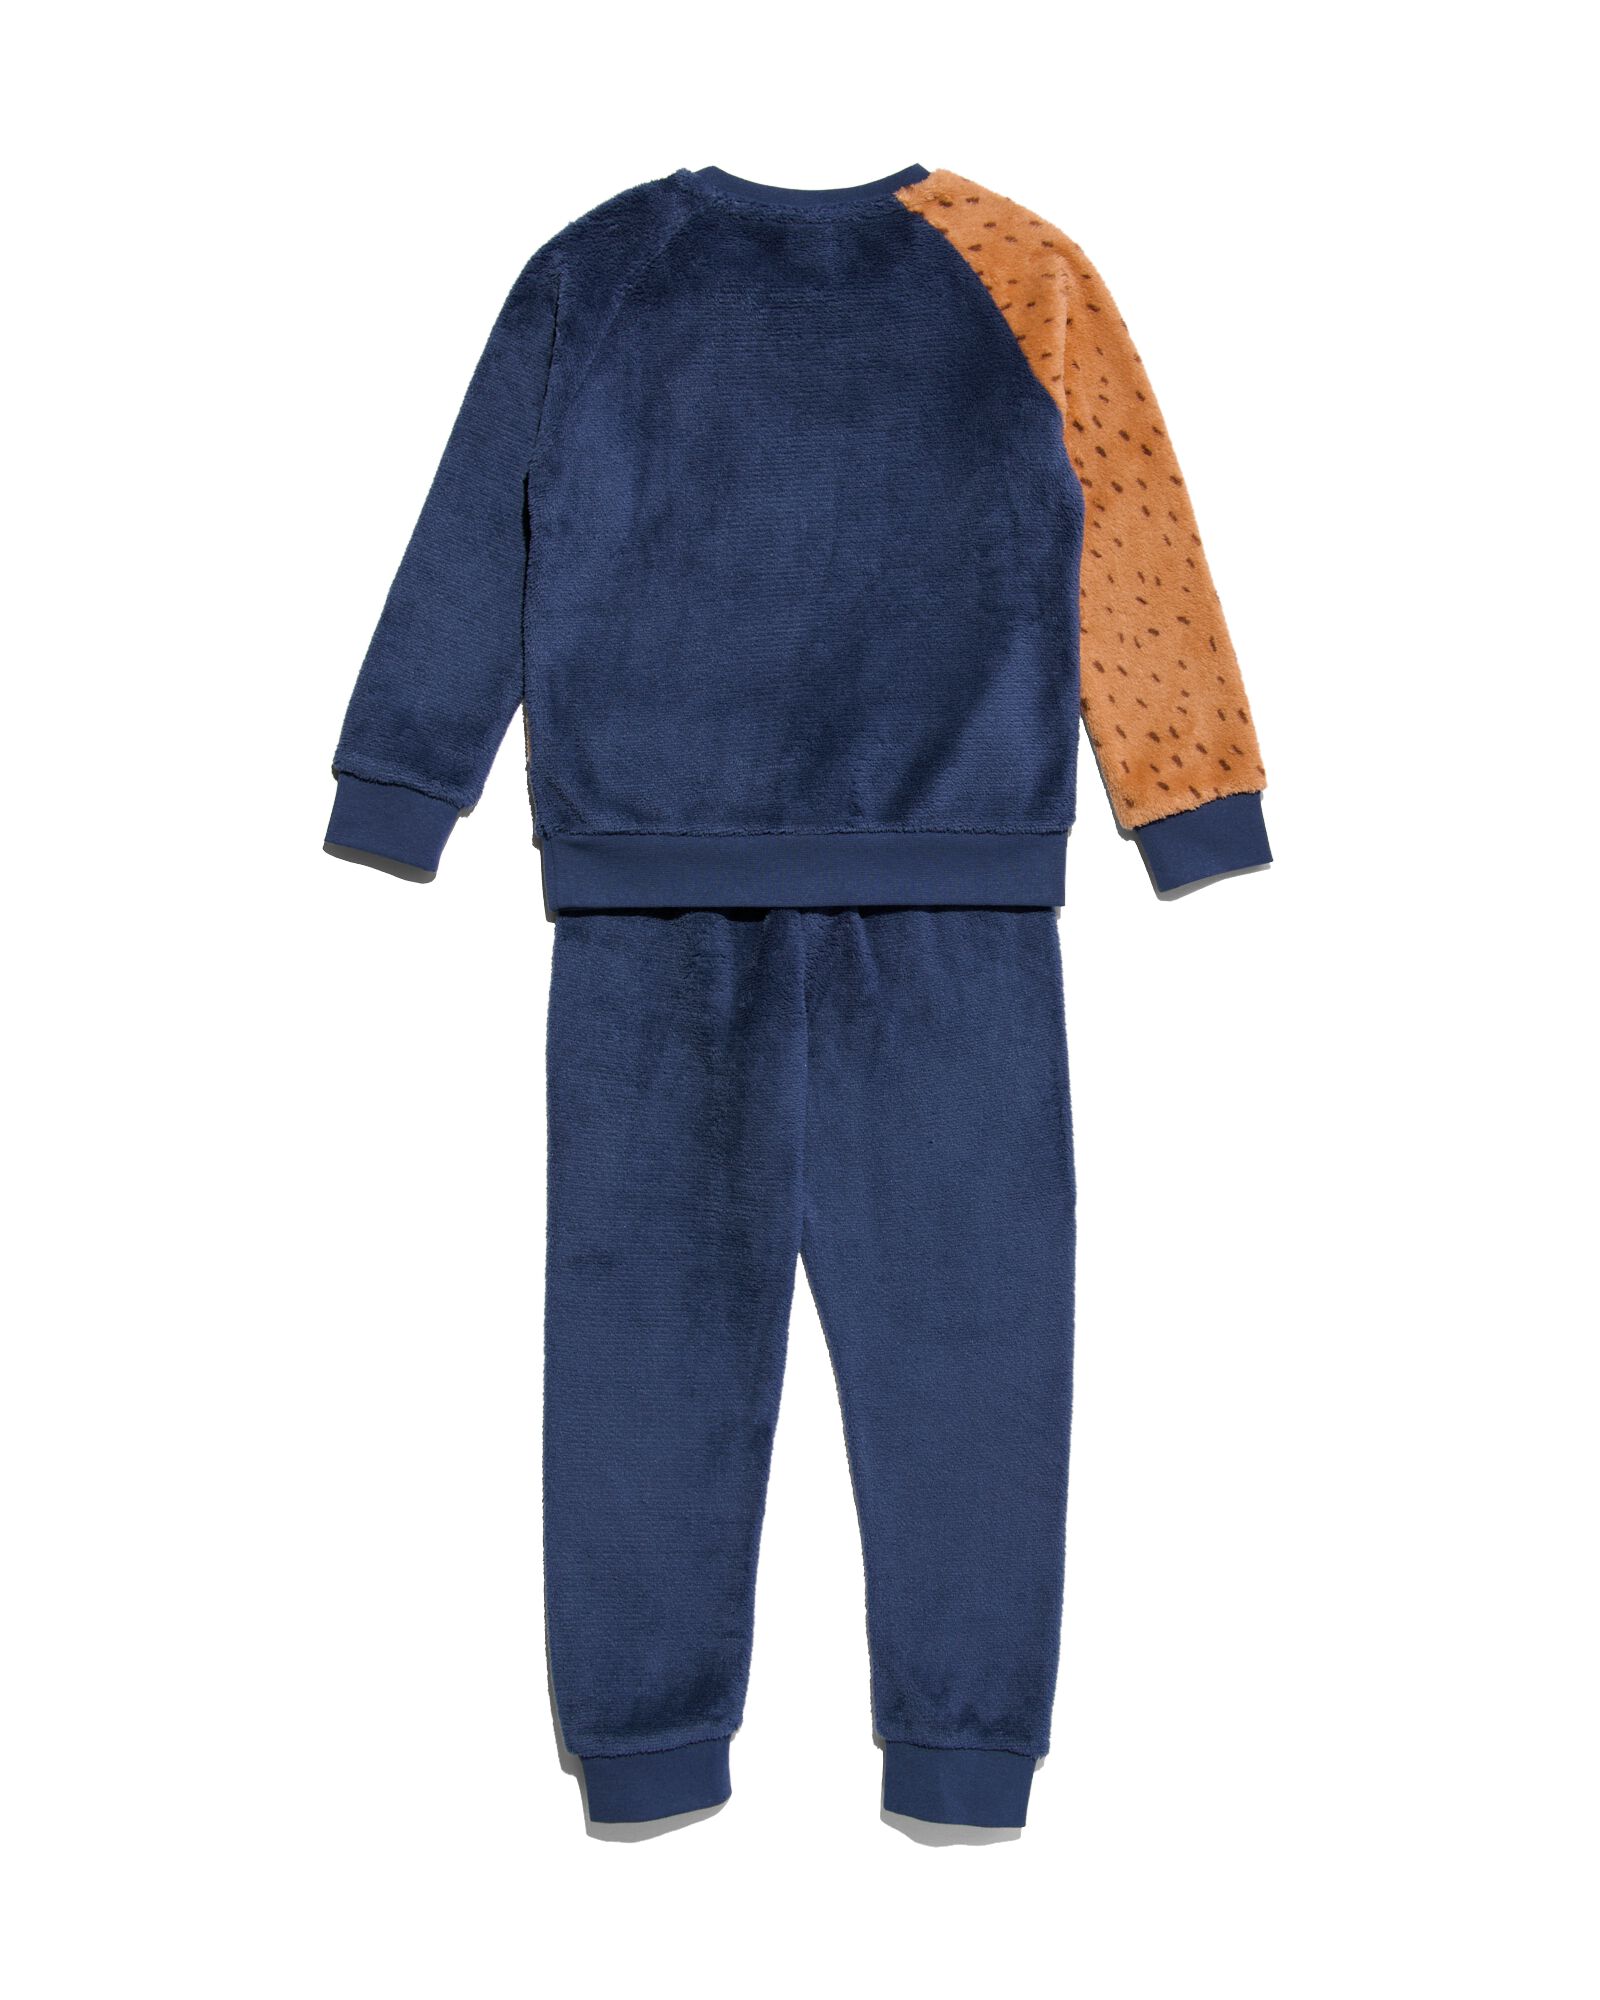 pyjama enfant polaire chien bleu foncé 122/128 - 23030484 - HEMA